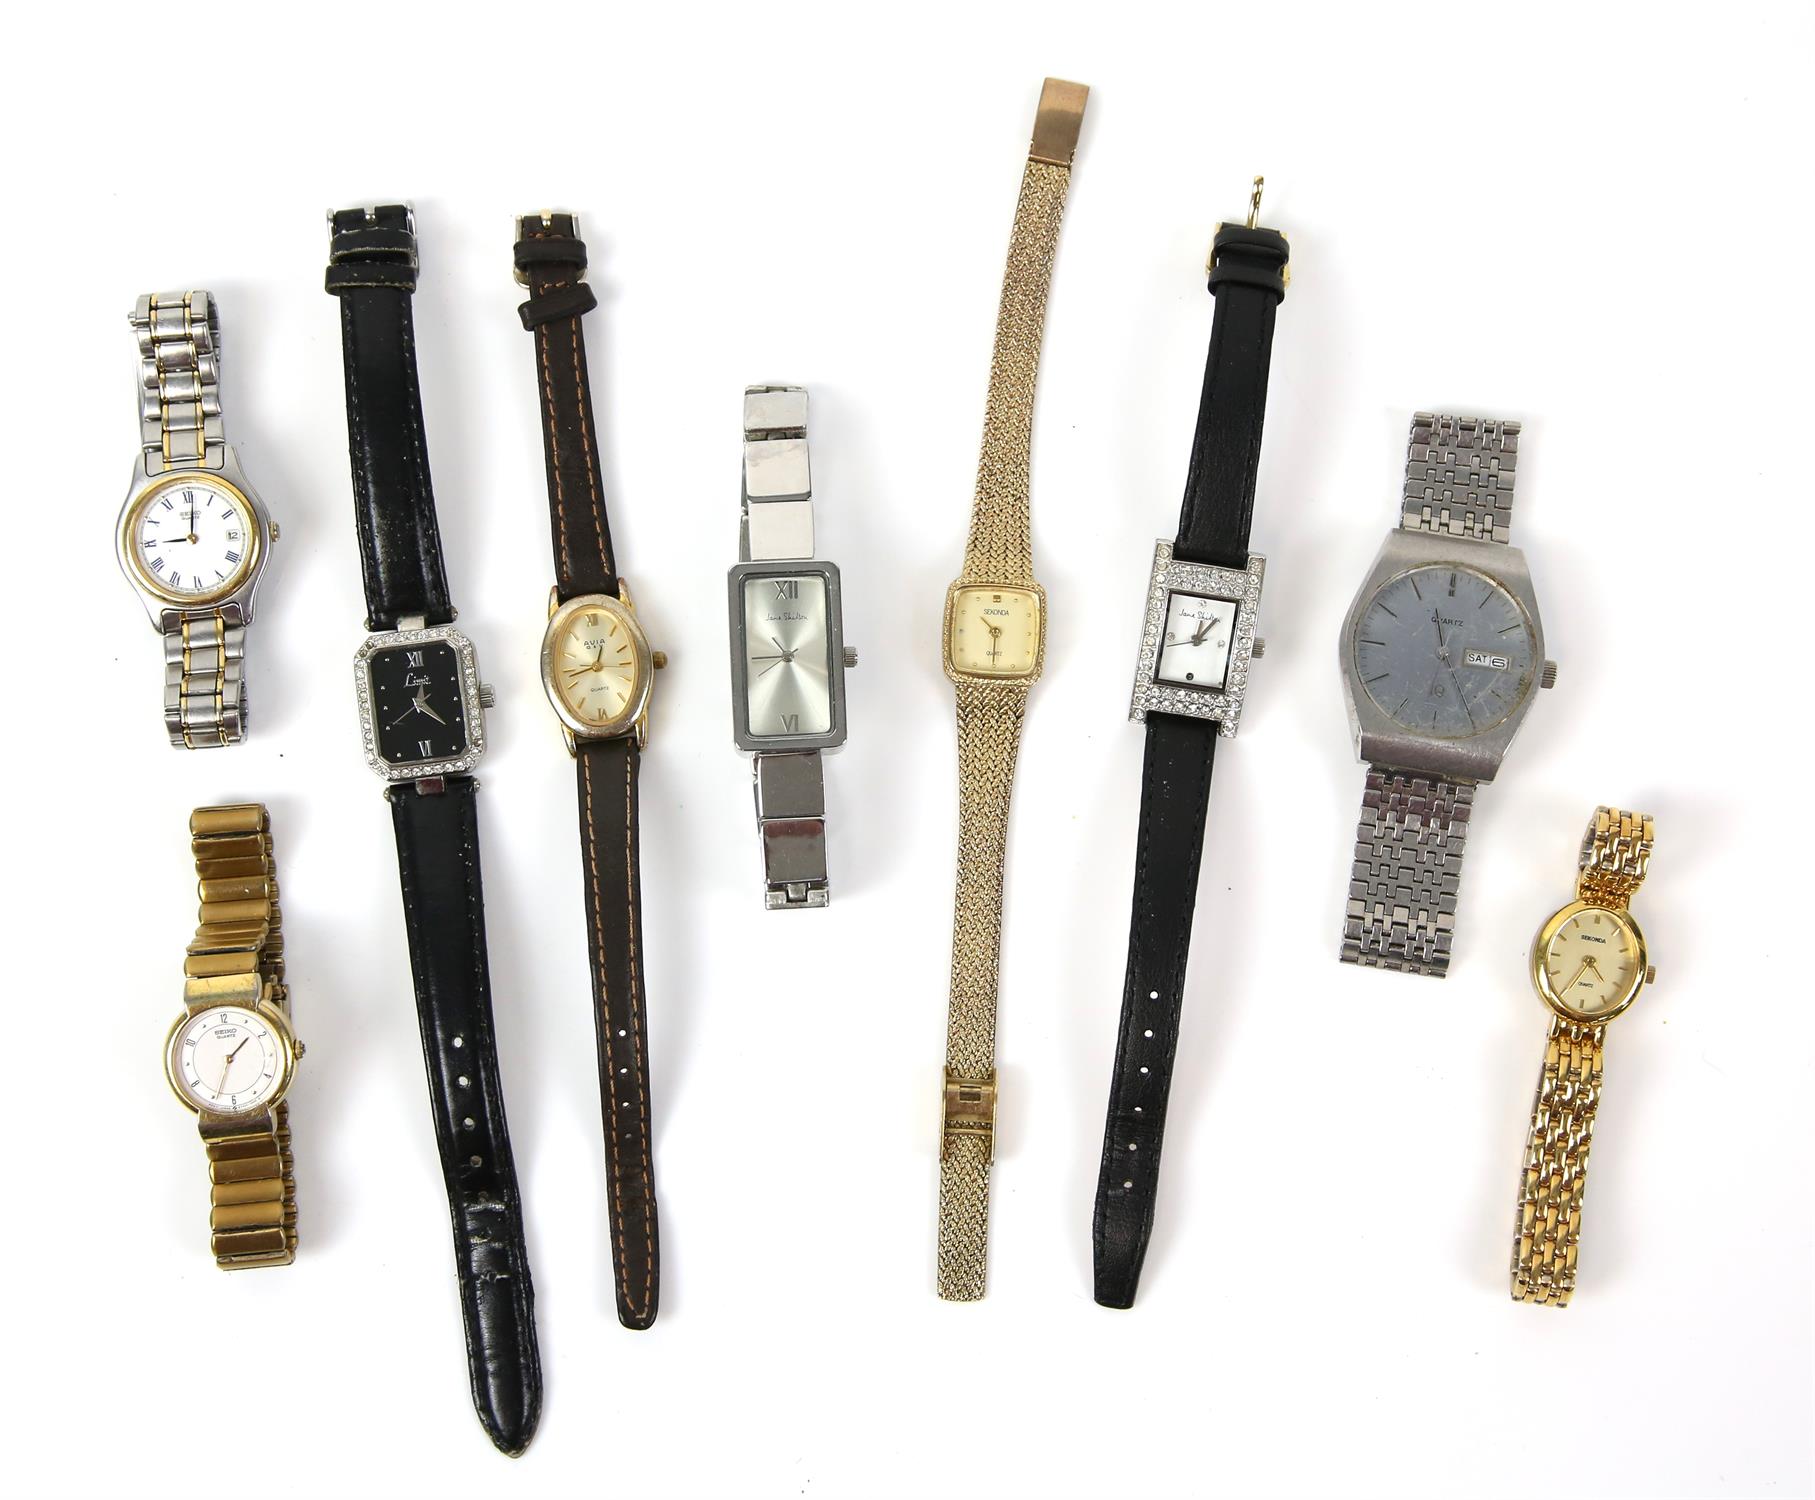 Ladies Quartz wristwatches by ,Seiko (2), Sekonda(2), Avia, Limit Jane Shilton, (2) and a